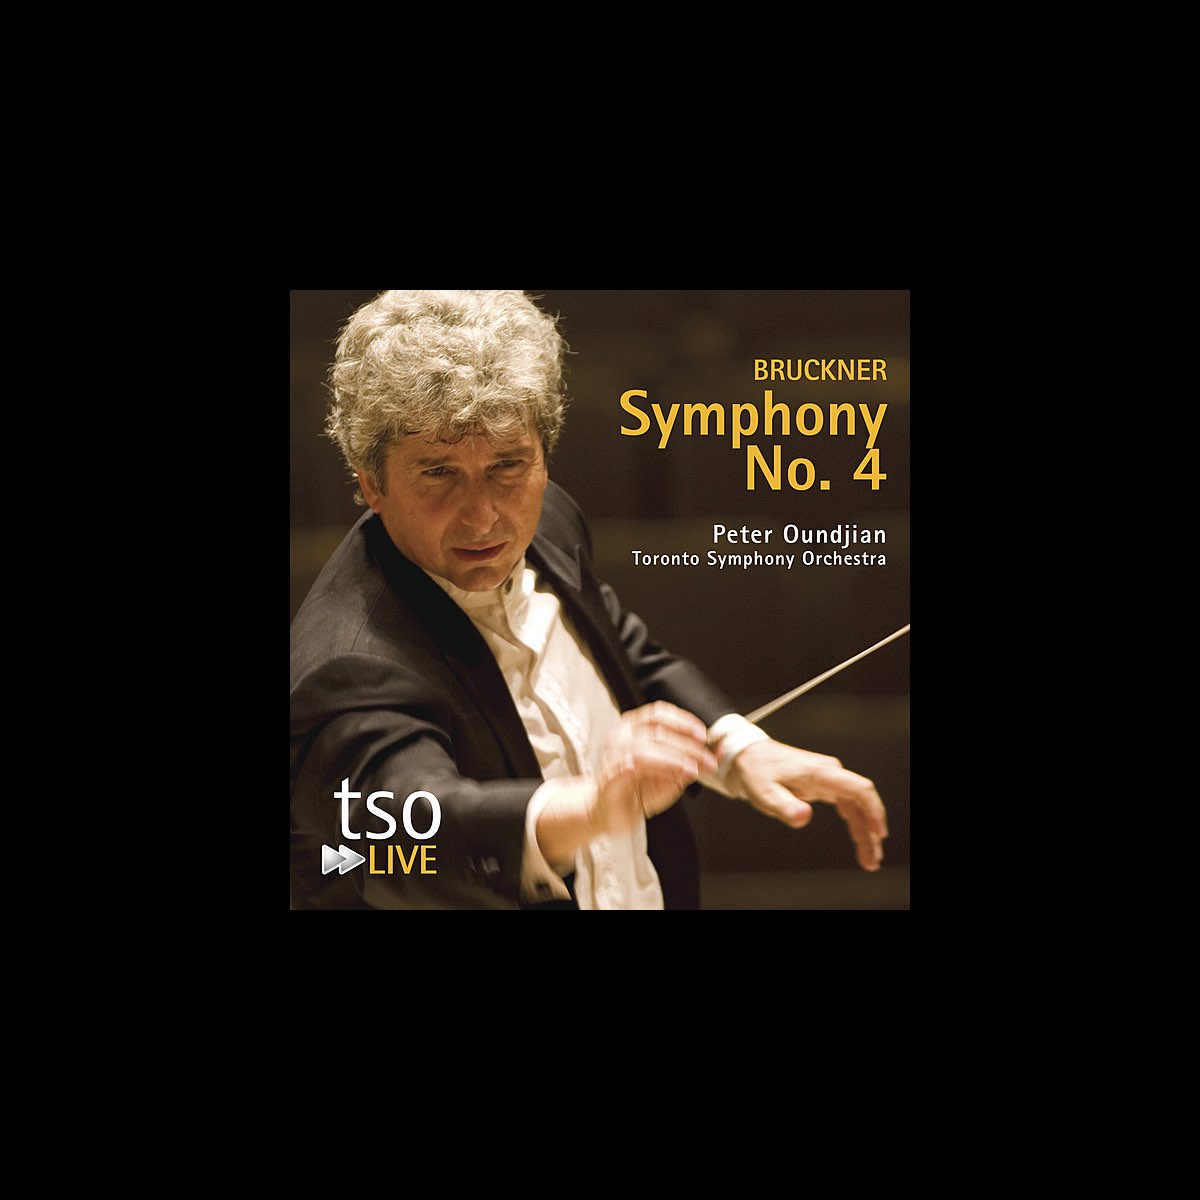 トロント交響楽団 Peter Oundjianの Bruckner Symphony No 4 をapple Musicで